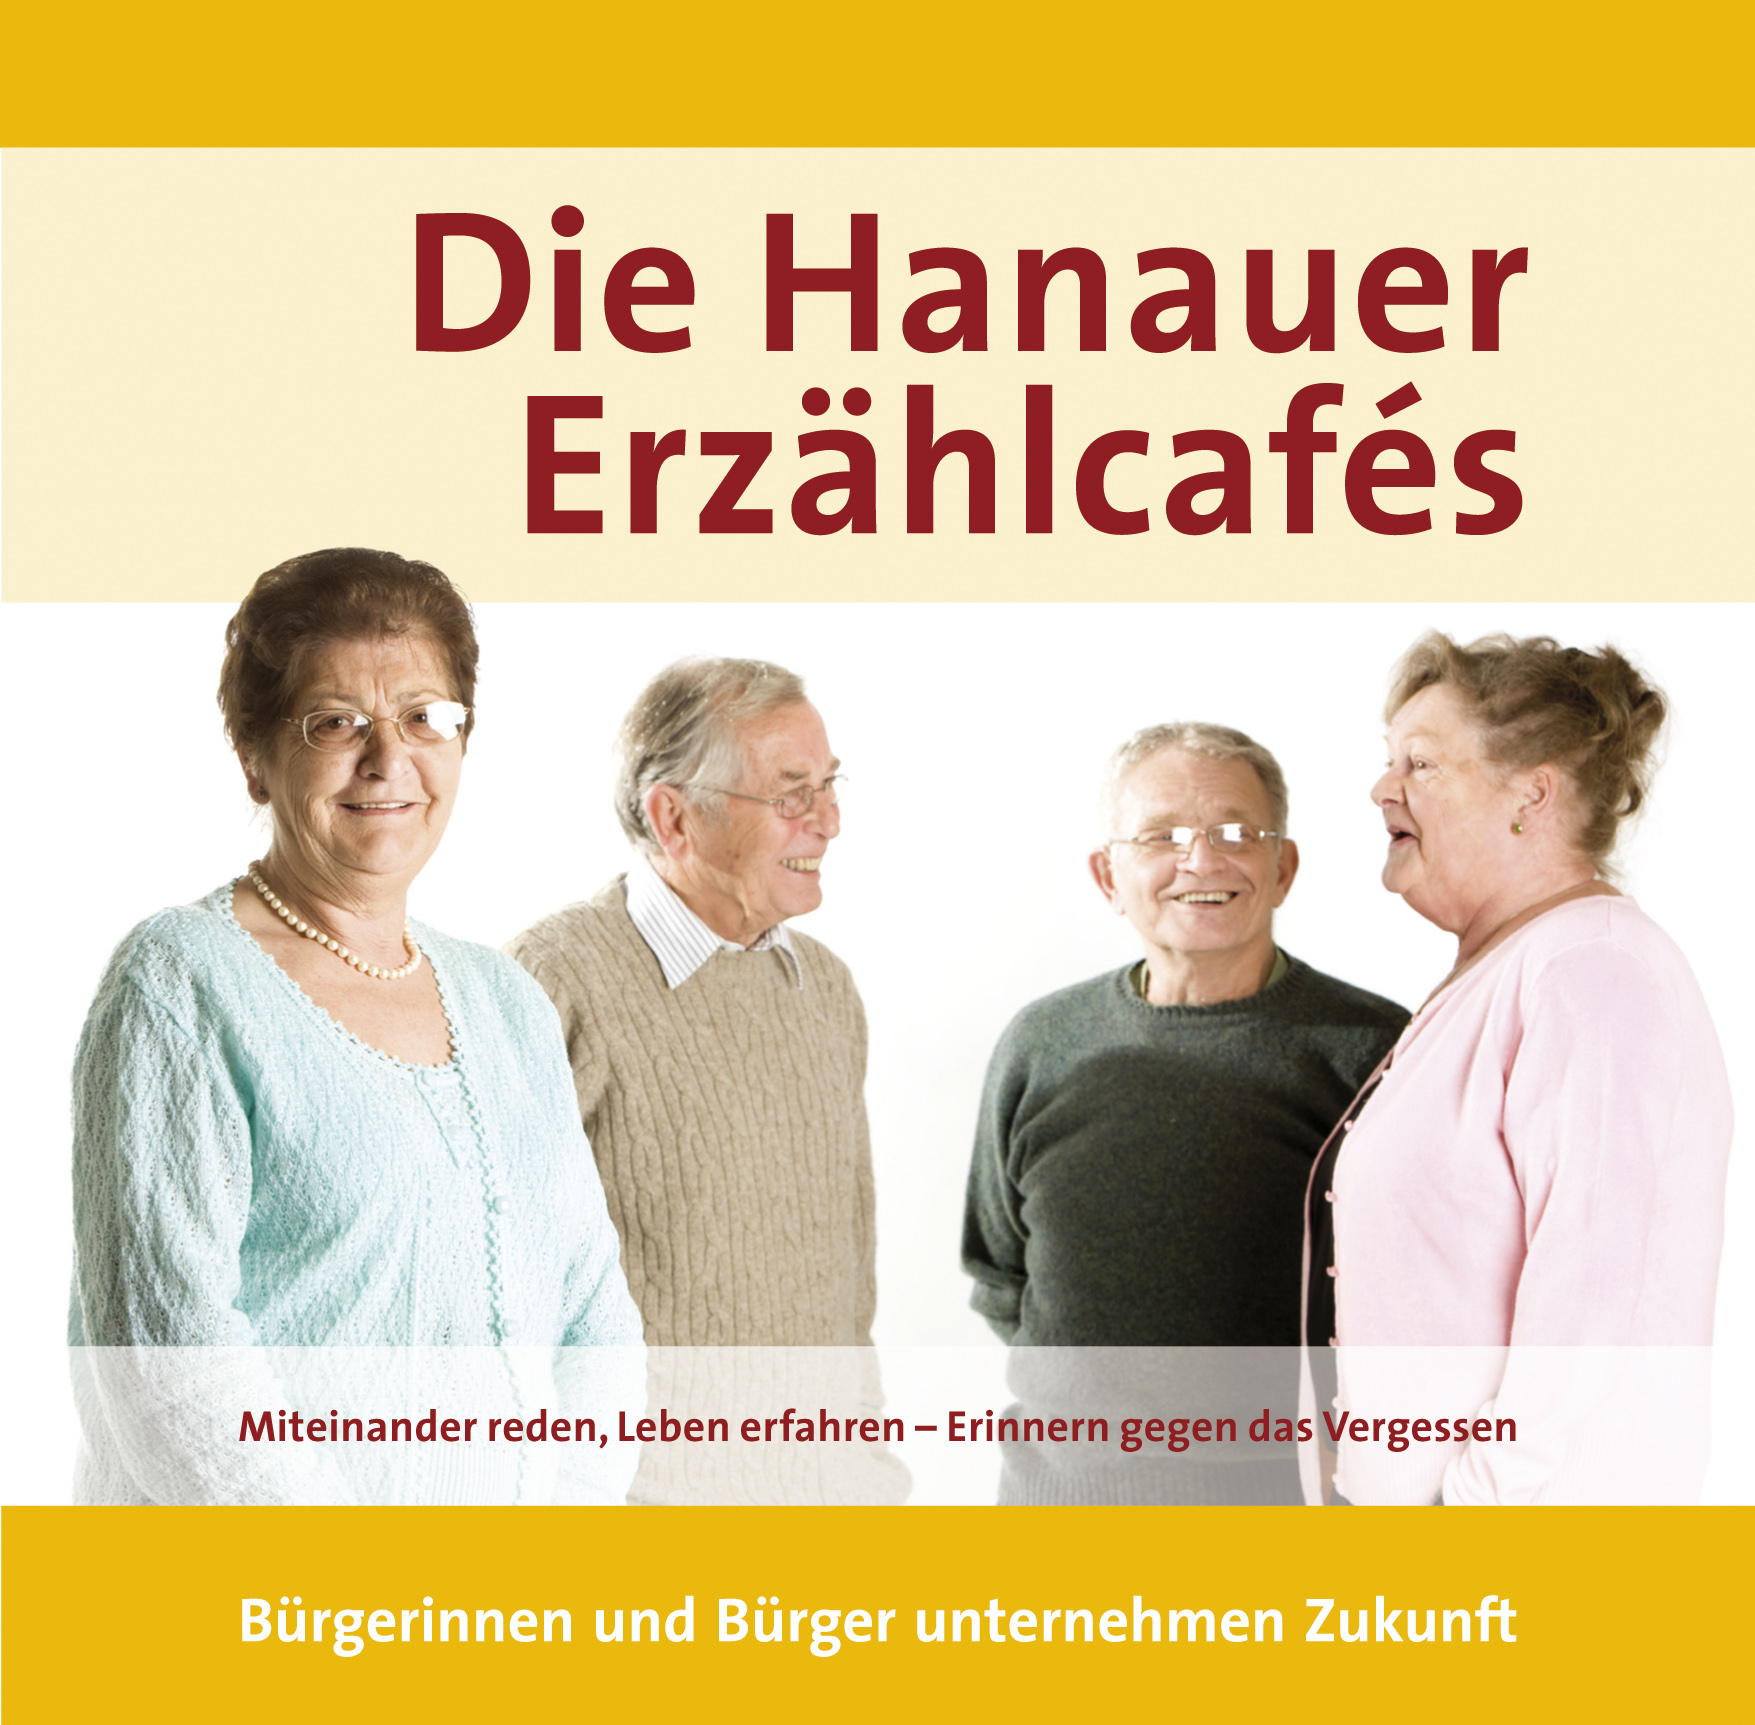 Hanauer Erzähl-Cafés - zeigt 4 Bürgerinnen und Bürger, die miteinander reden.